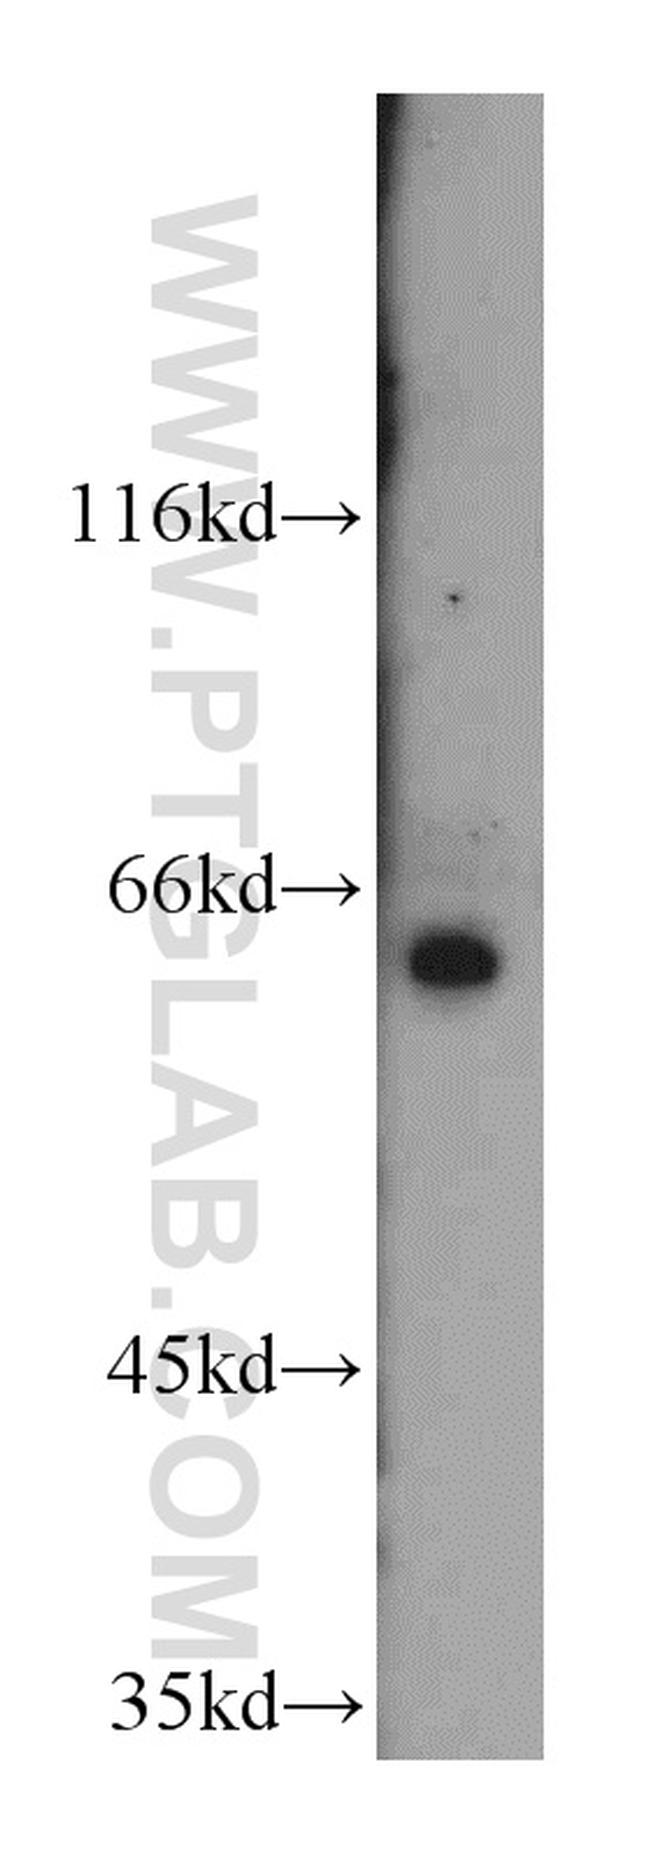 SLC38A4 Antibody in Western Blot (WB)